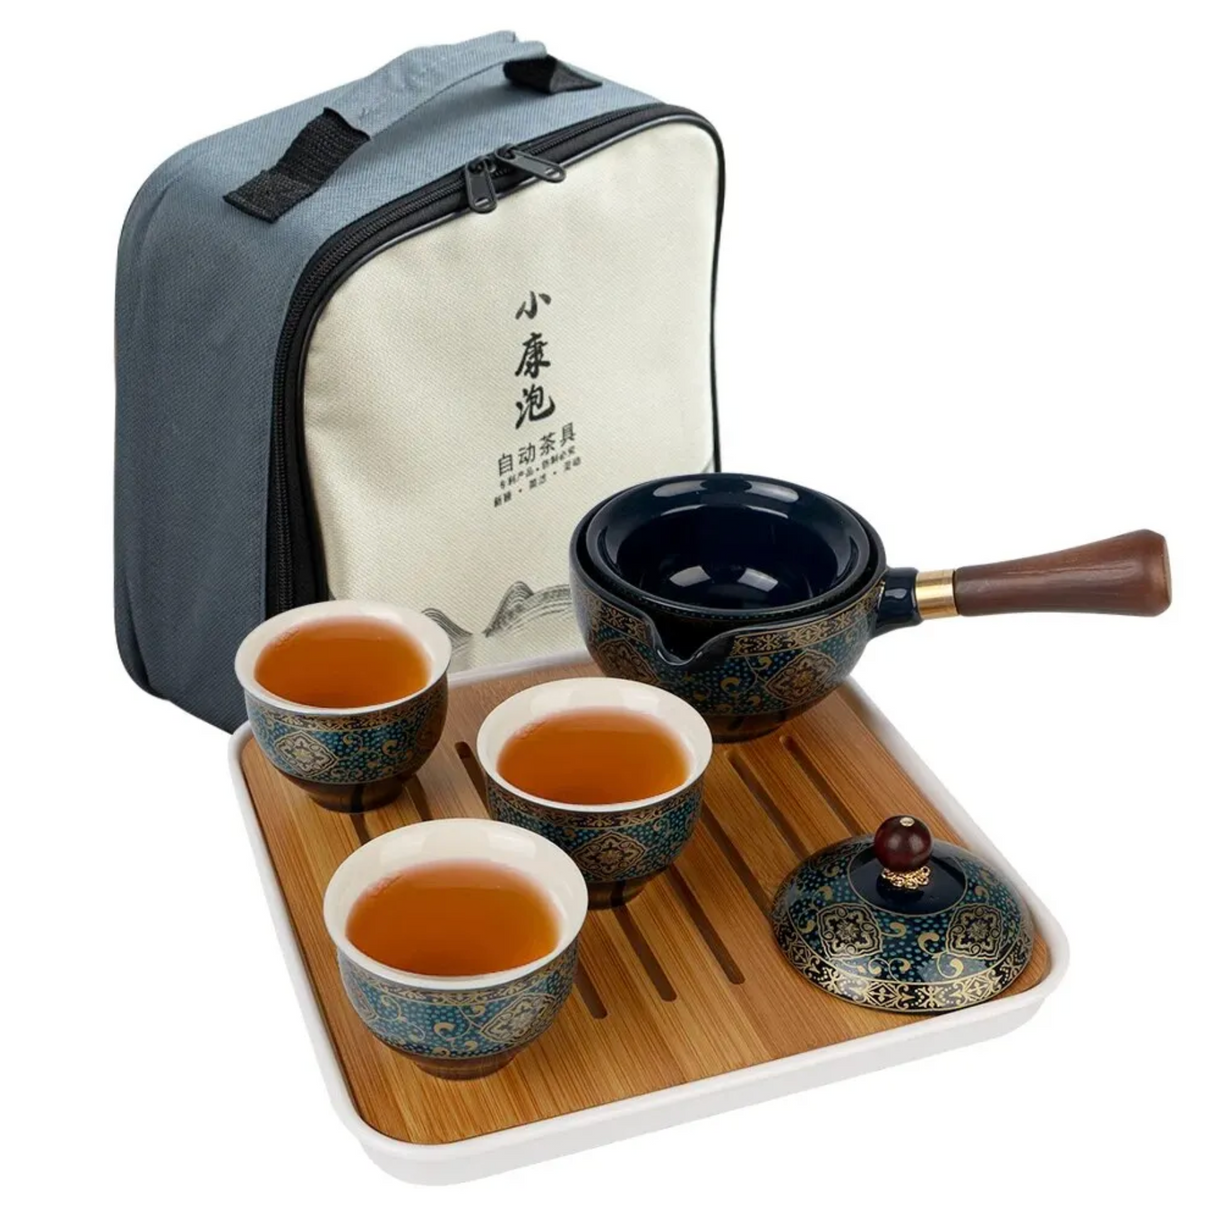 Les accessoires du service à thé japonais — Niwa thés